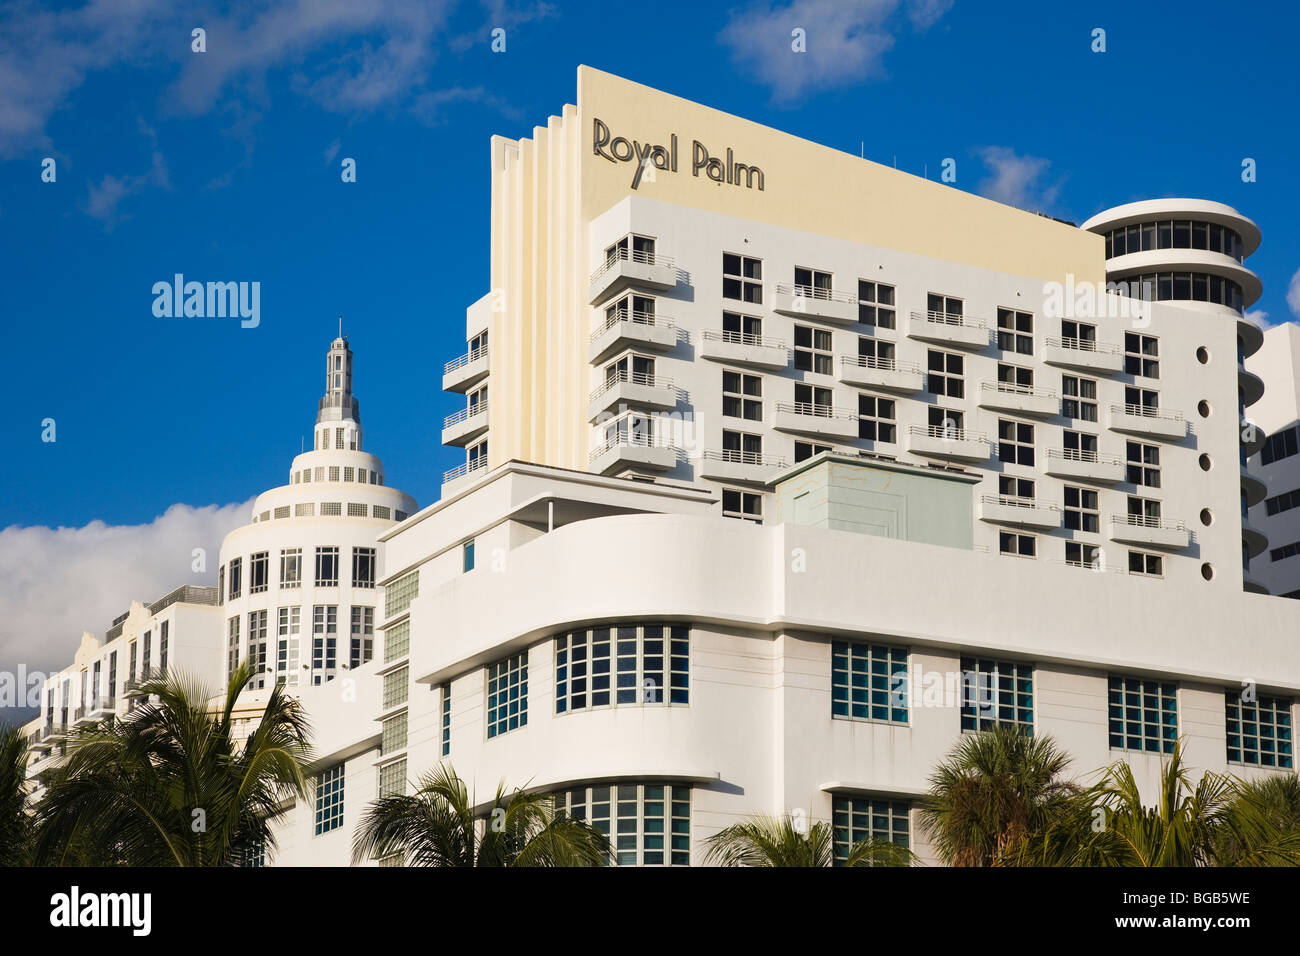 Hôtel Royal Palm et autres bâtiments, South Beach, Miami, Floride, USA Banque D'Images